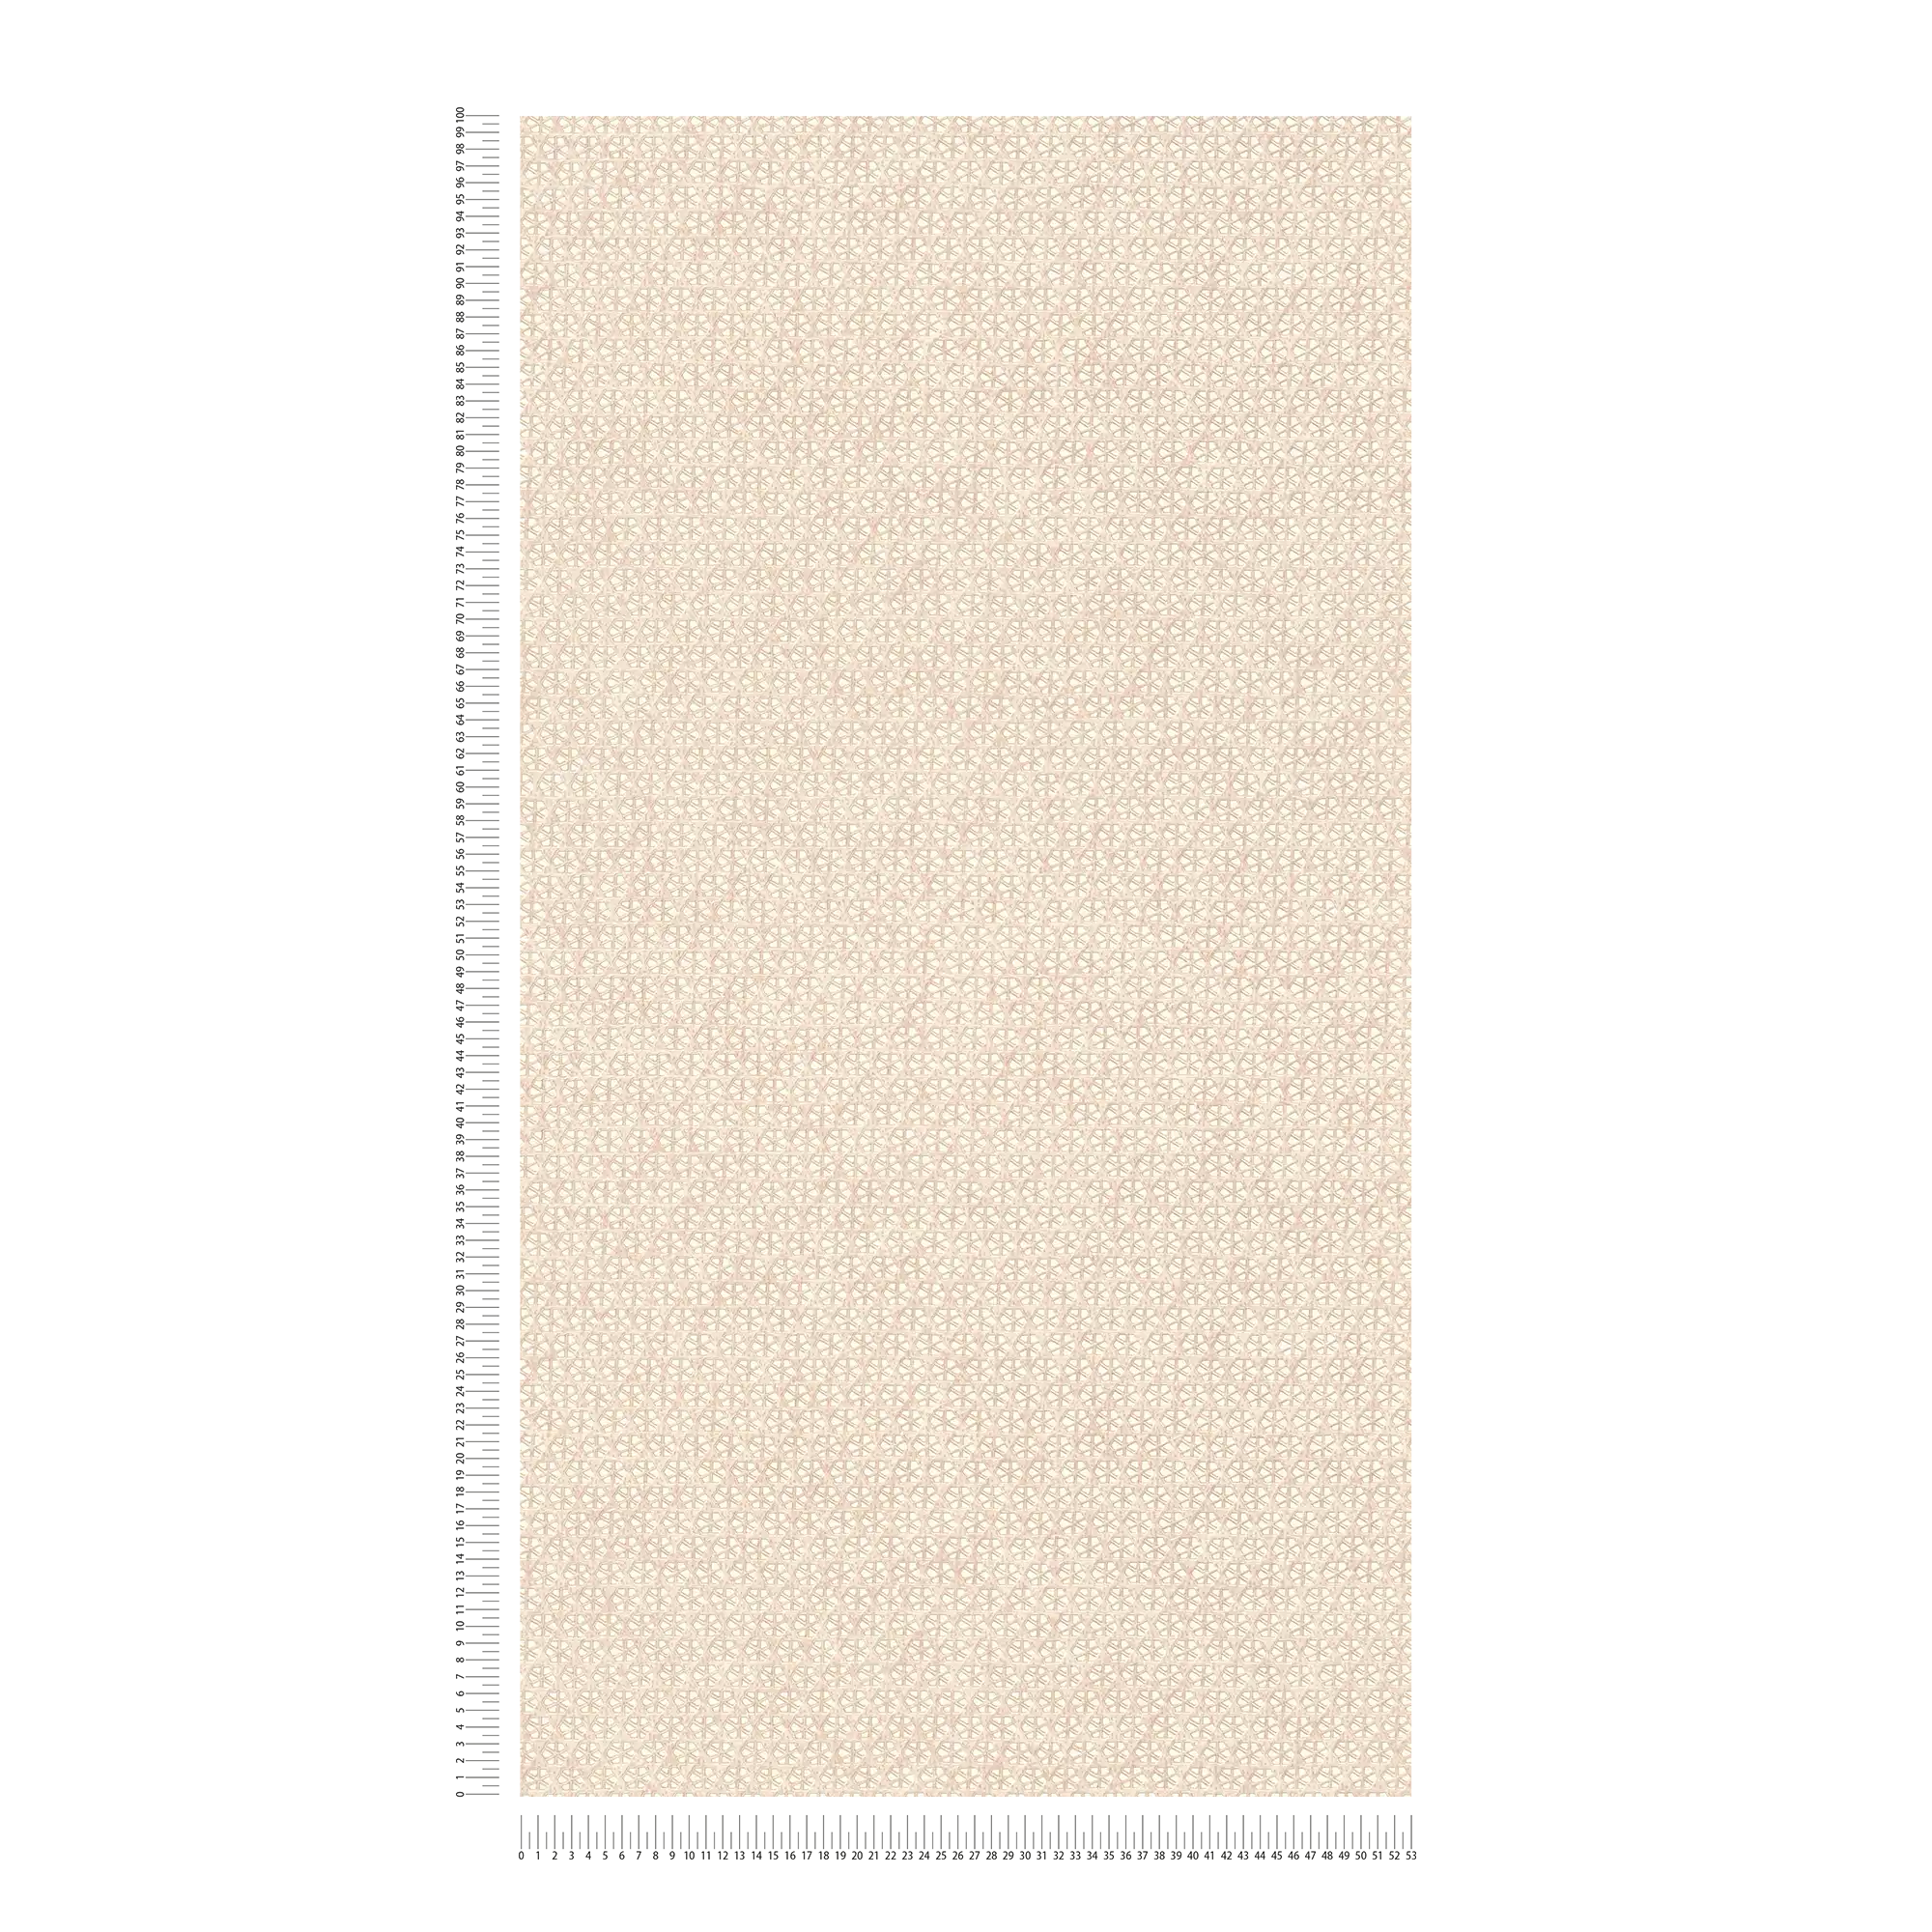             papel pintado trenza de viena - beige, marrón, crema
        